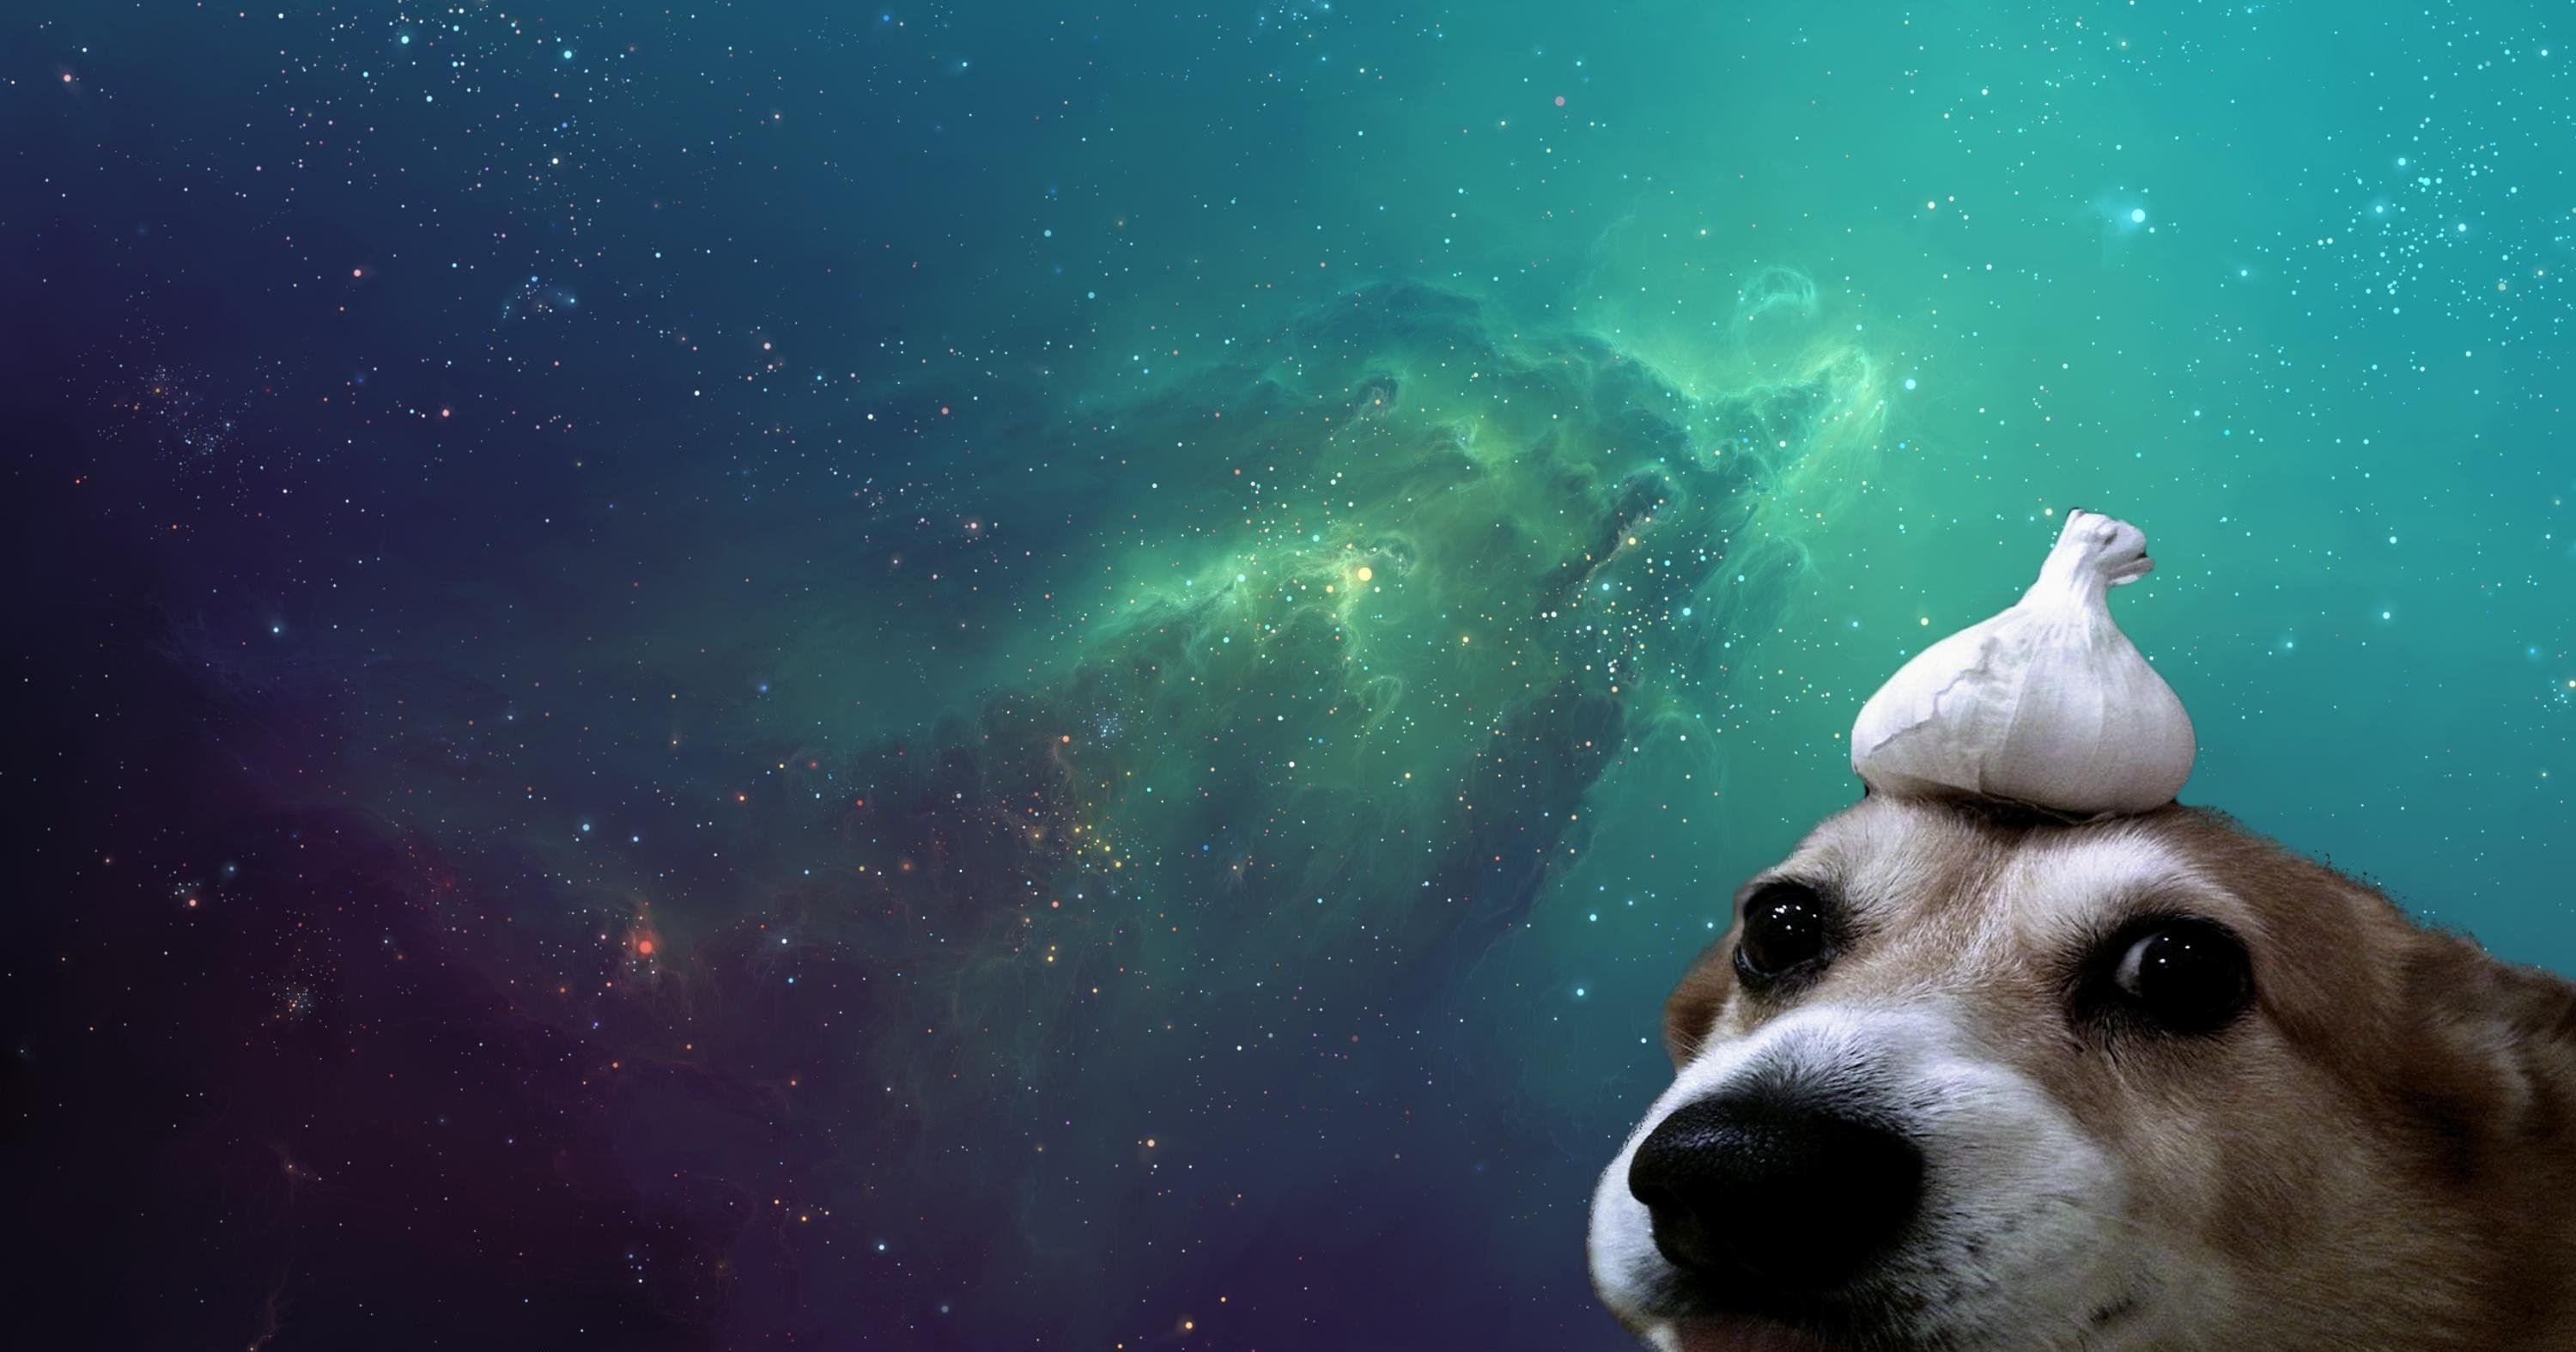 Galaxy Dog Wallpaper Free Galaxy Dog Background